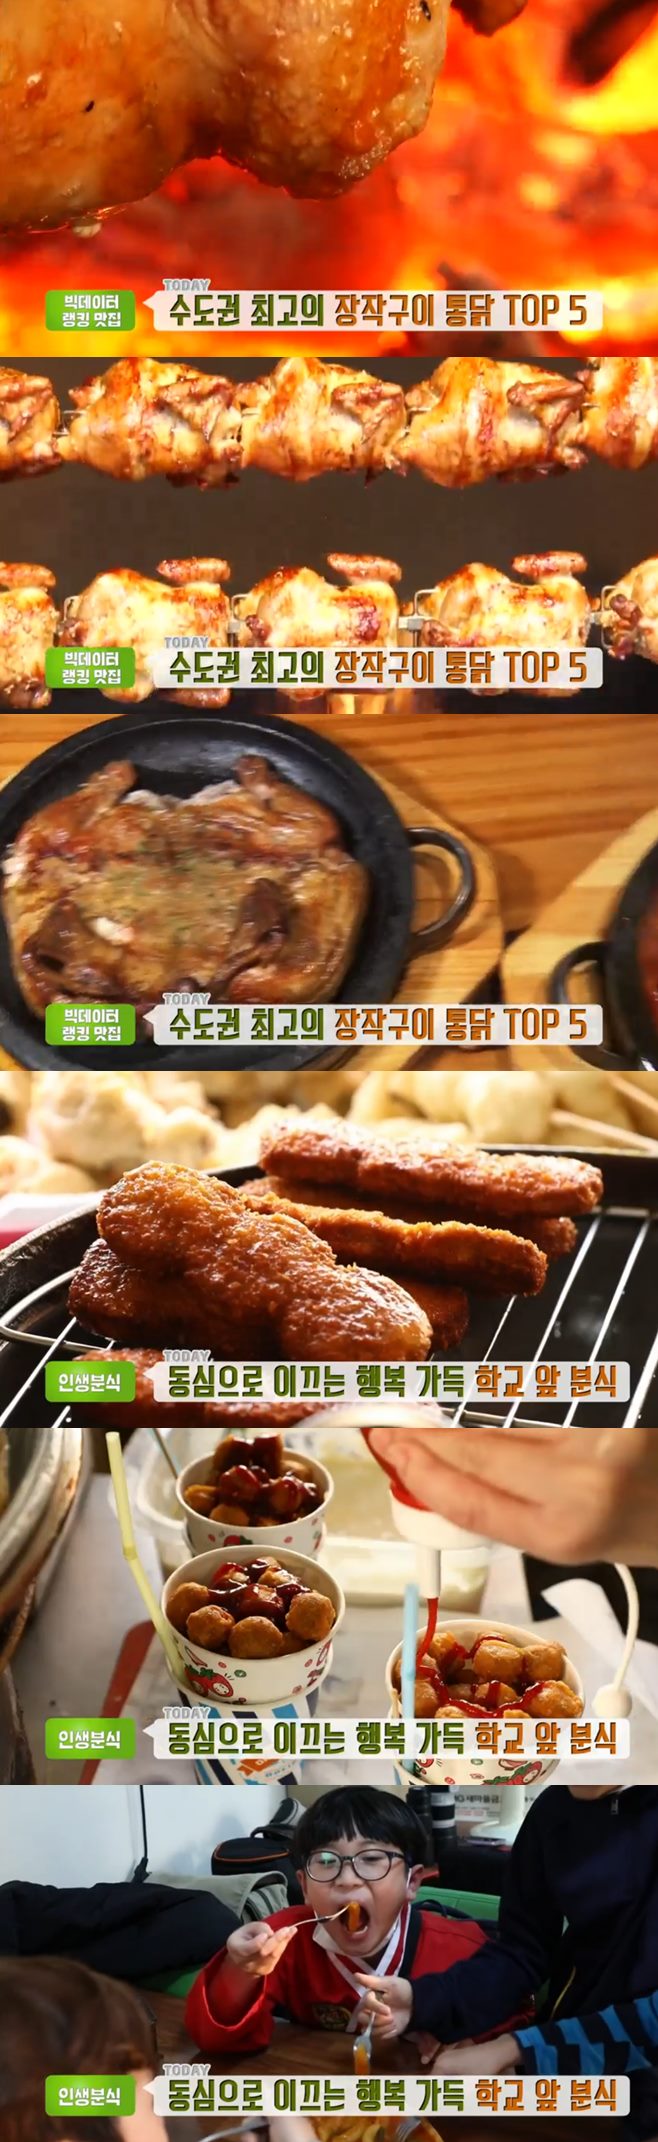 ‘생방송투데이’ 인천 장작구이통닭(나들목누룽지통닭구이)+떡볶이(숙희네분식) 맛집